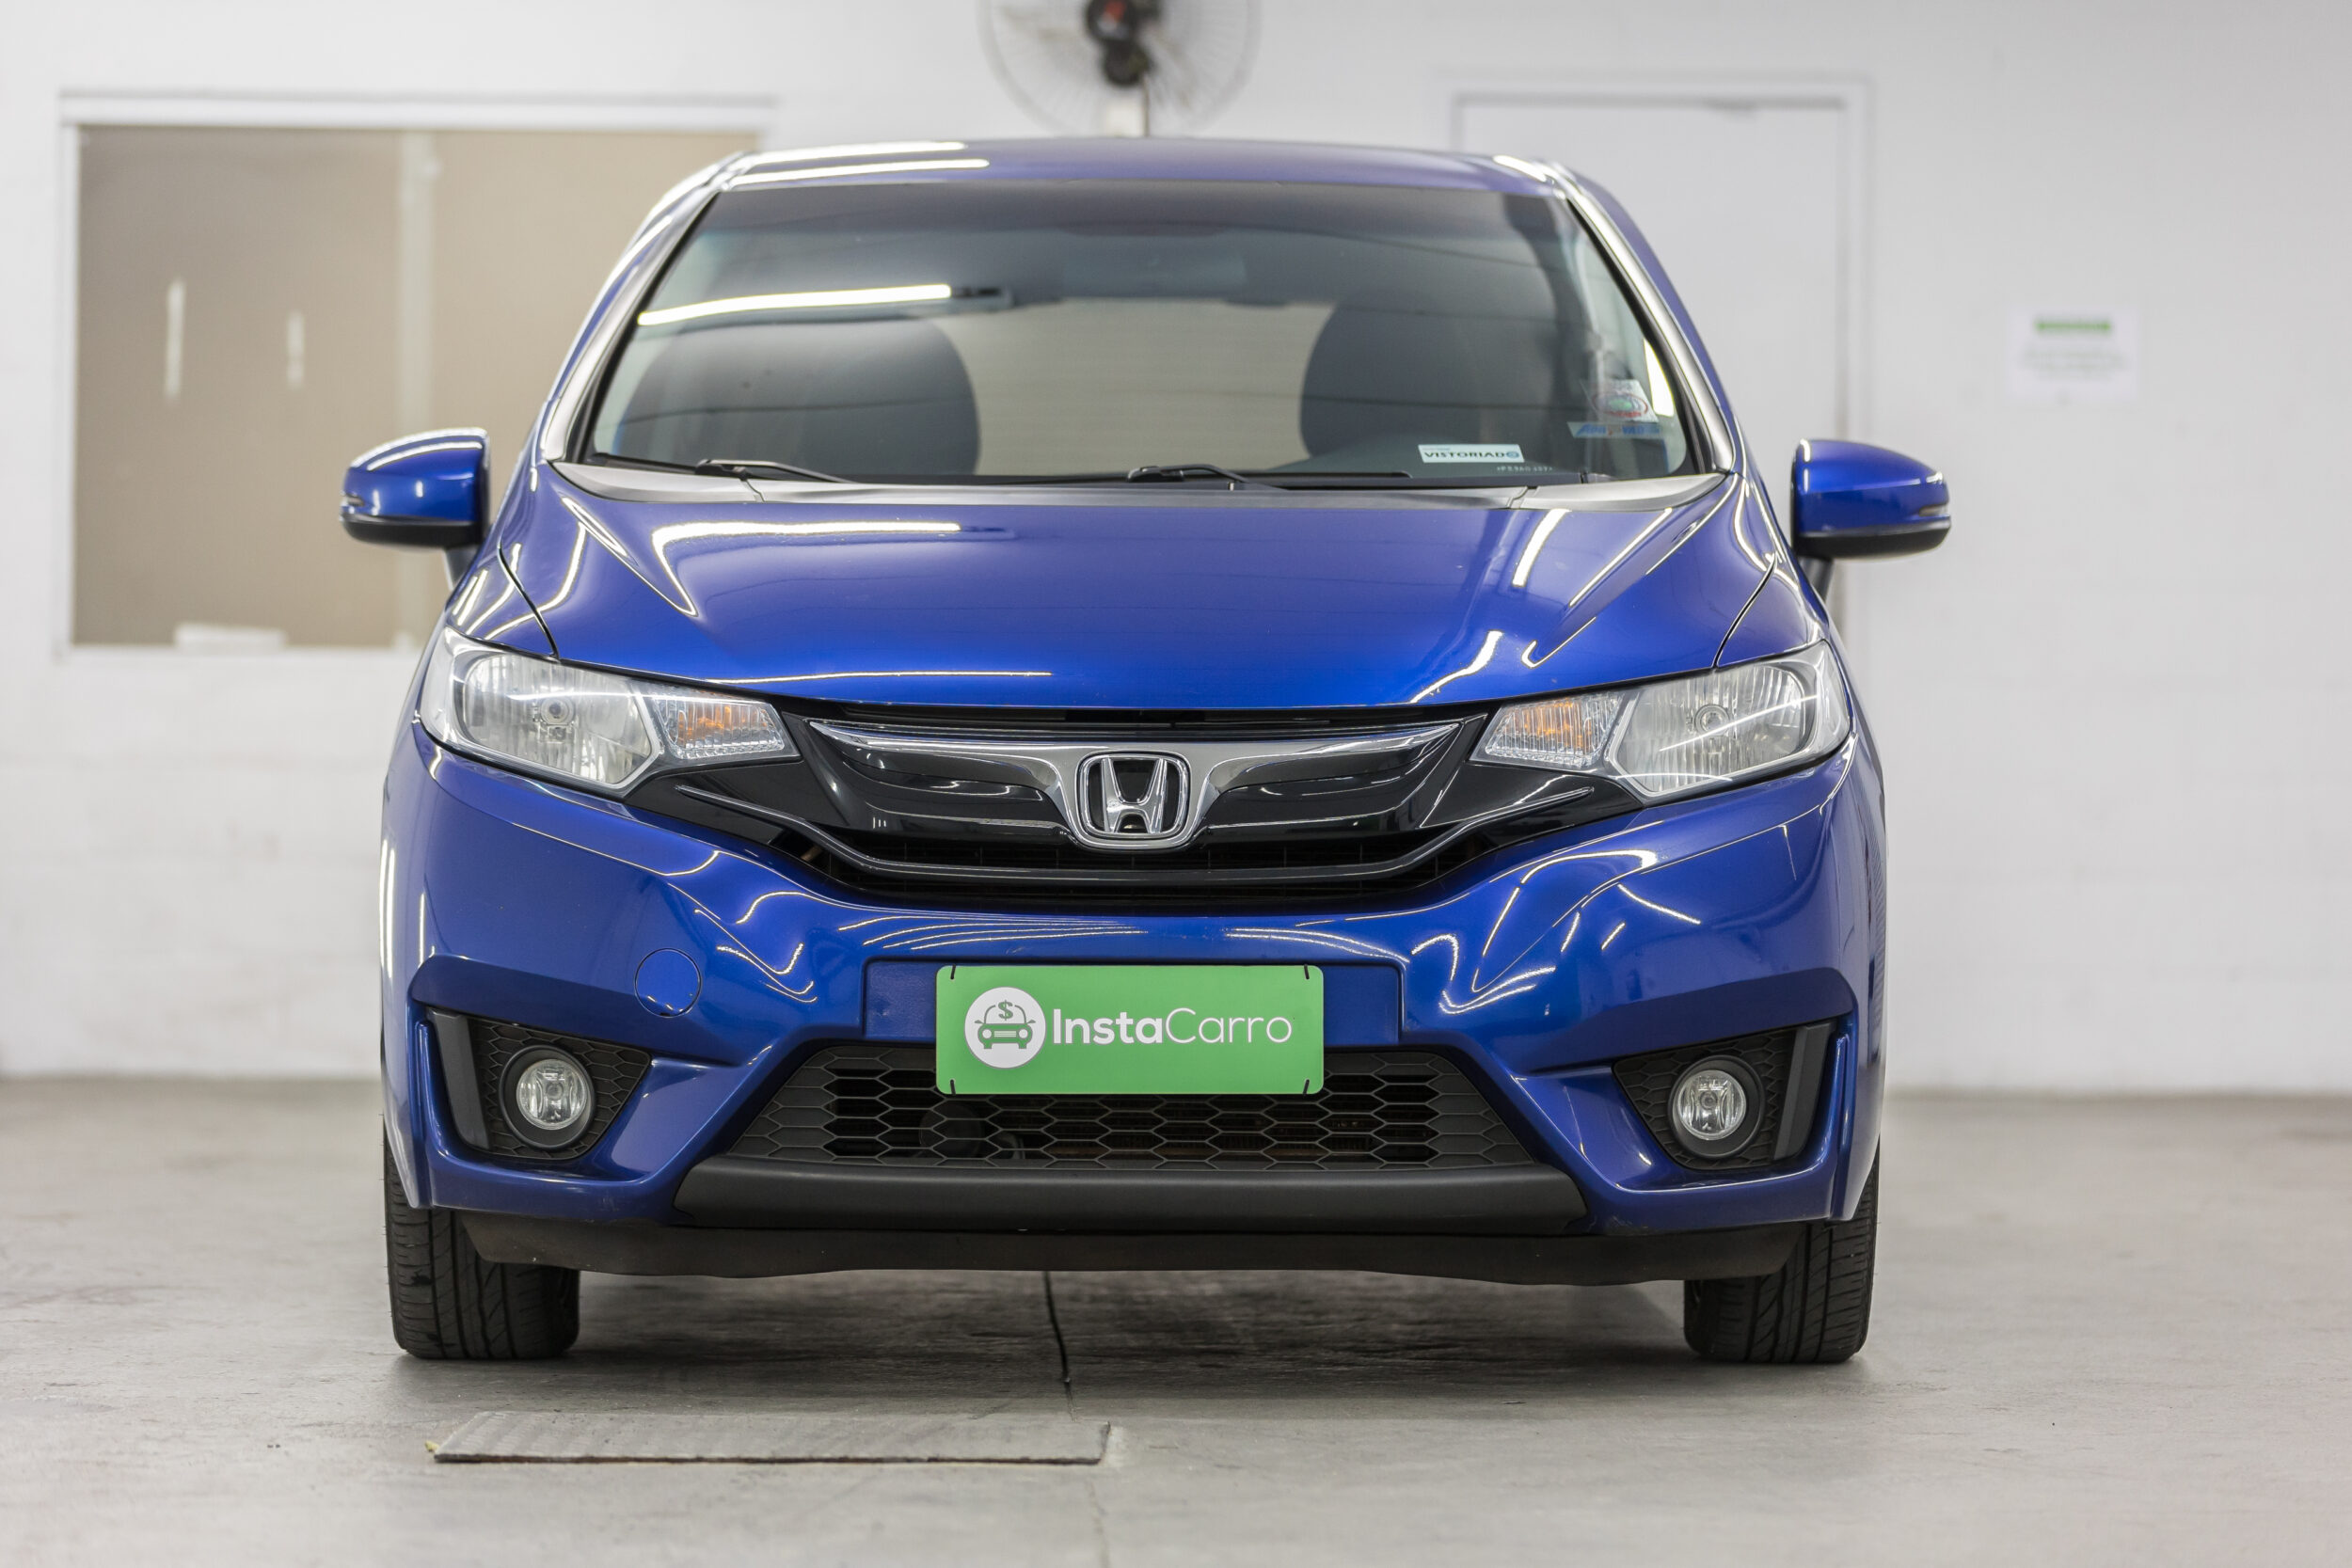 Honda Fit EXL 2015 carros usados mais vendidos